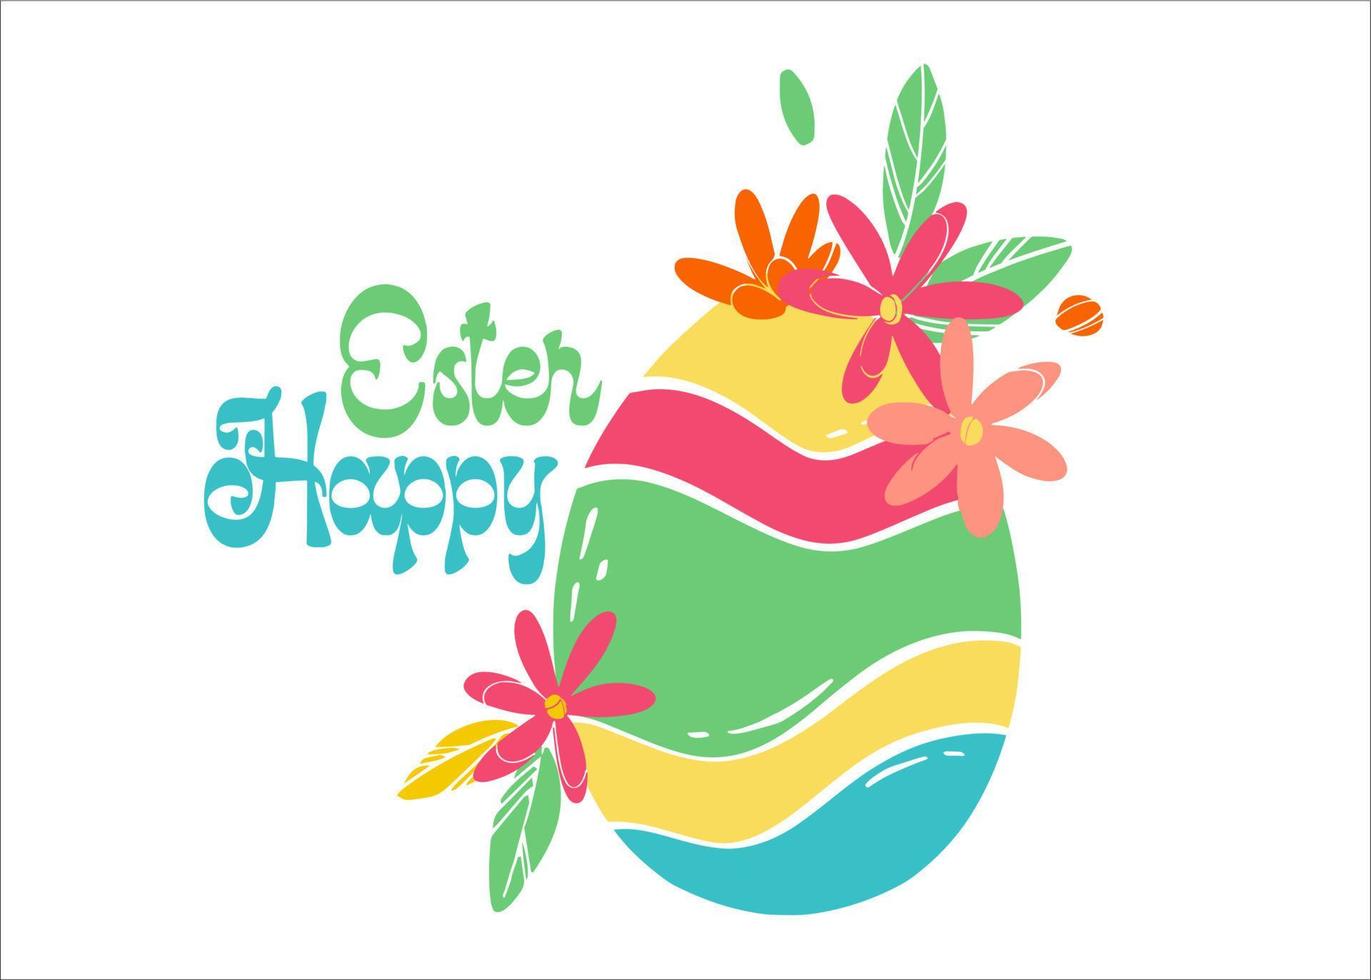 vår dekorerad ägg och inskrift Lycklig påsk. ljus färgad ägg med blommor och löv. platt vektor illustration för konceptuell design. hälsning kort layout.